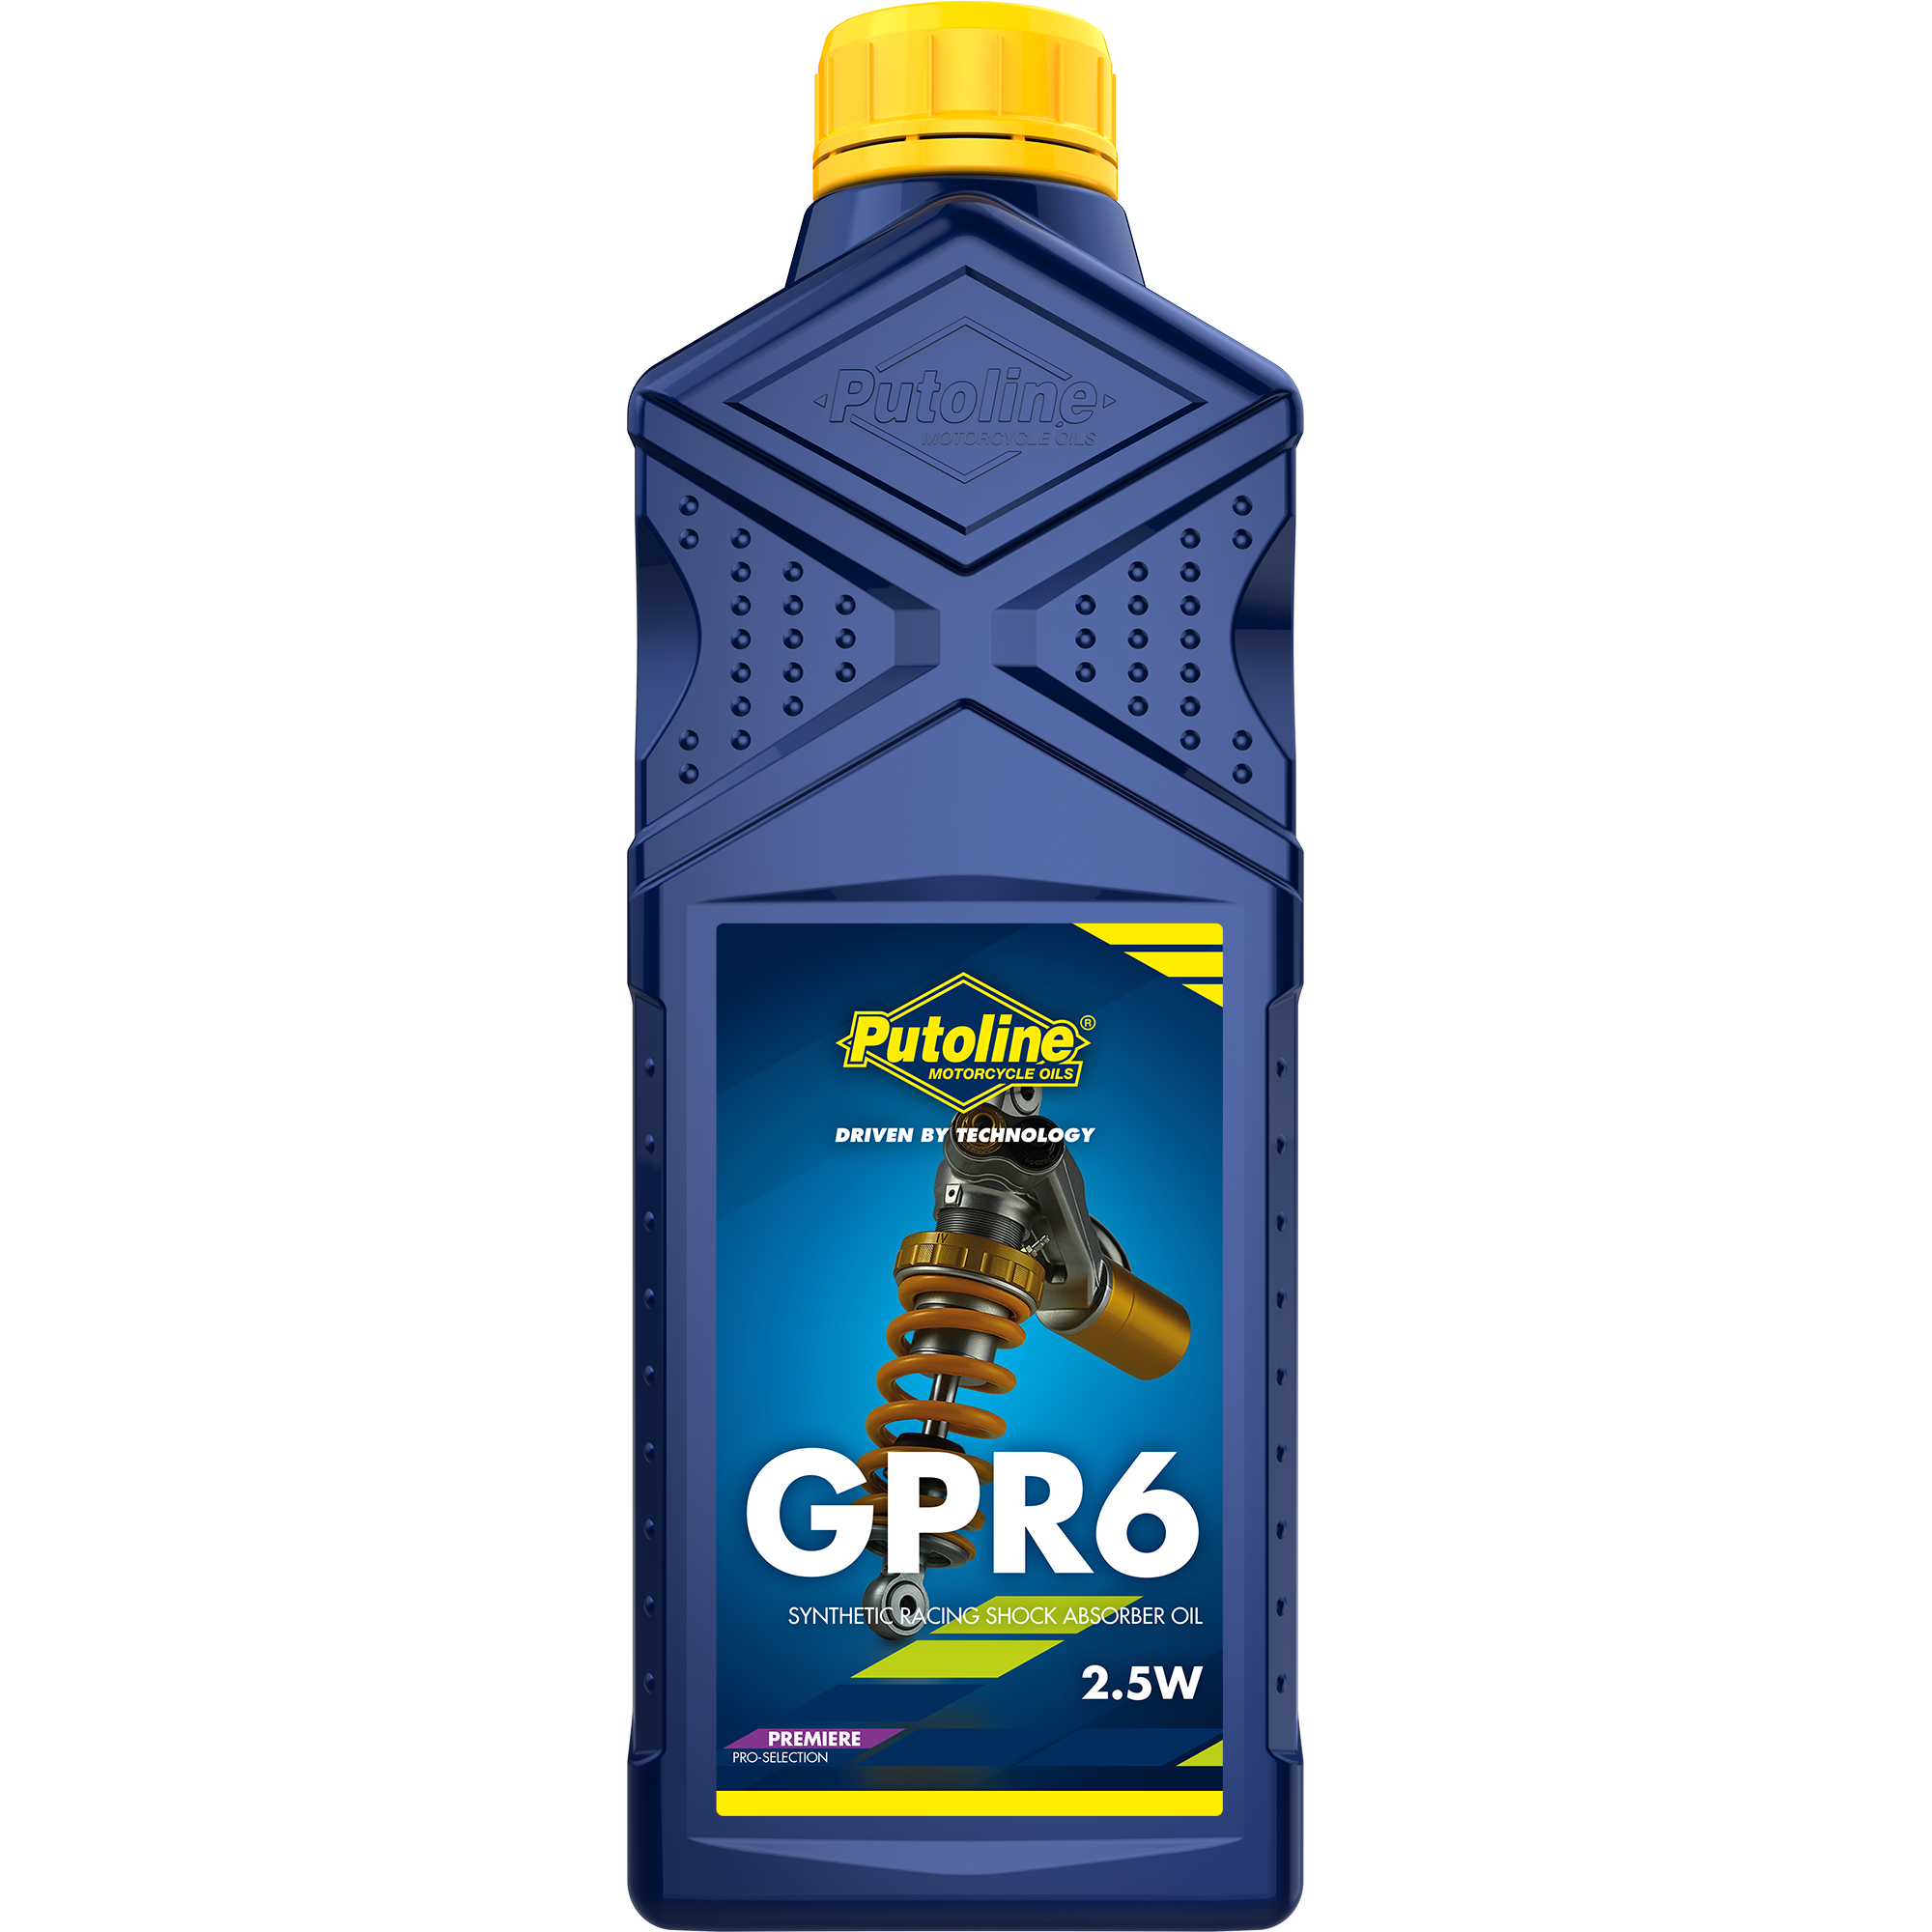 Putoline GPR 6 2.5W, 1 lt